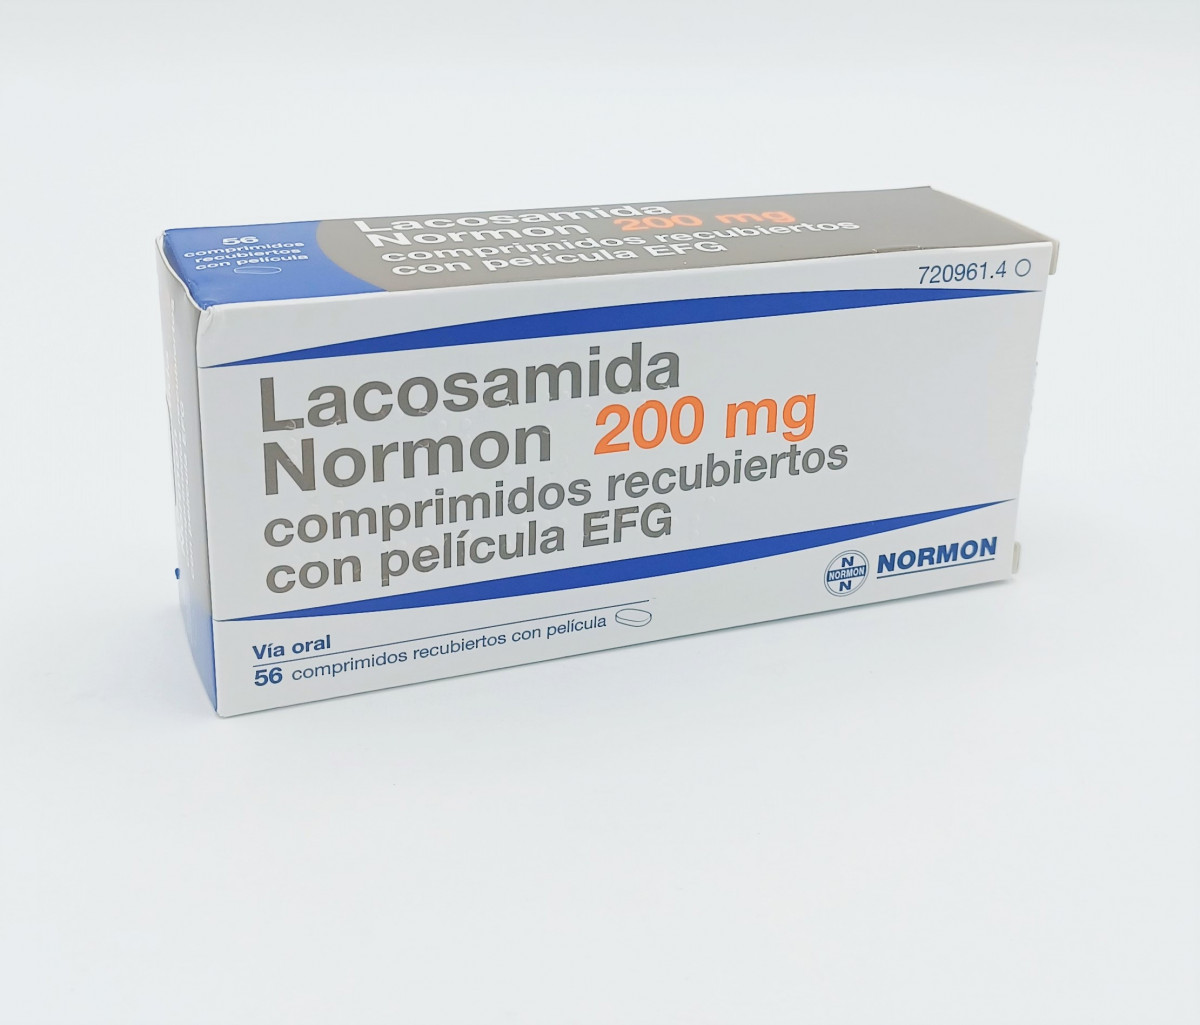 LACOSAMIDA NORMON 200 MG COMPRIMIDOS RECUBIERTOS CON PELICULA EFG, 56 comprimidos (Blister Al/PVC) fotografía del envase.